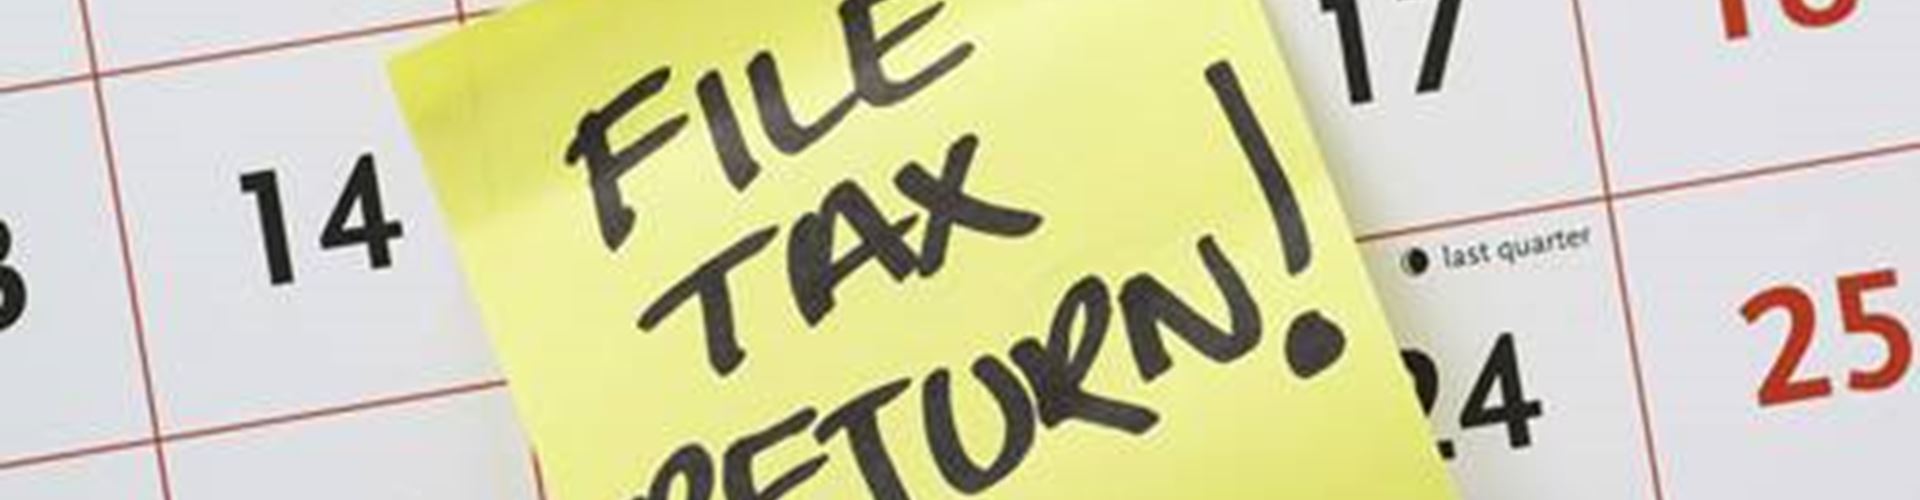 Self-assessment tax return deadline approaches